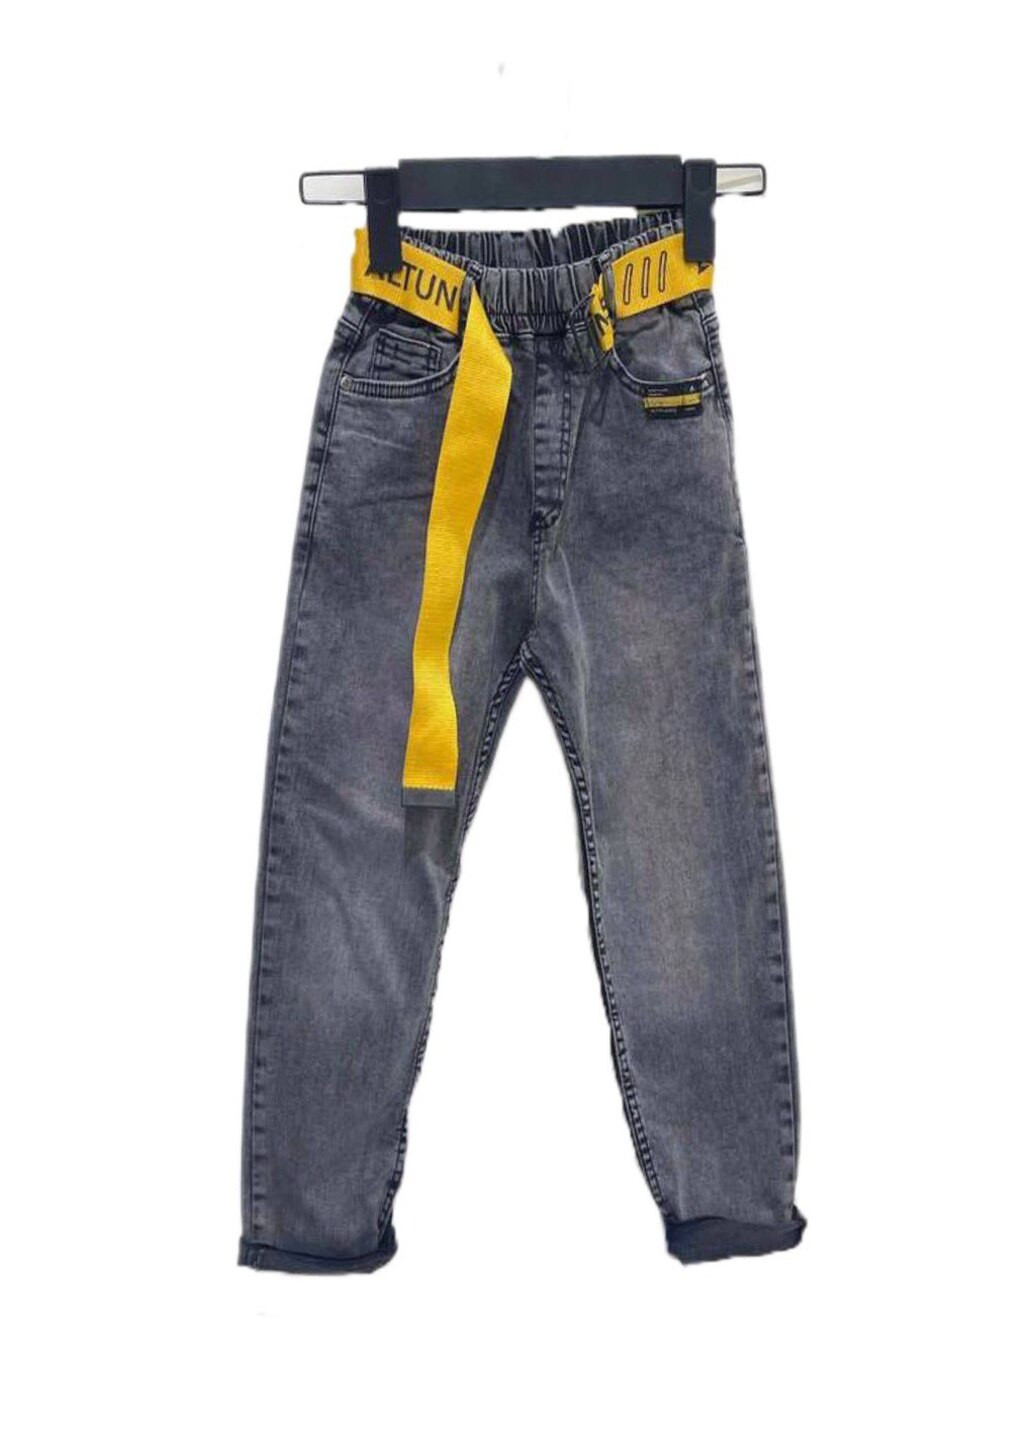 Серые демисезонные джинсы для мальчика Altun